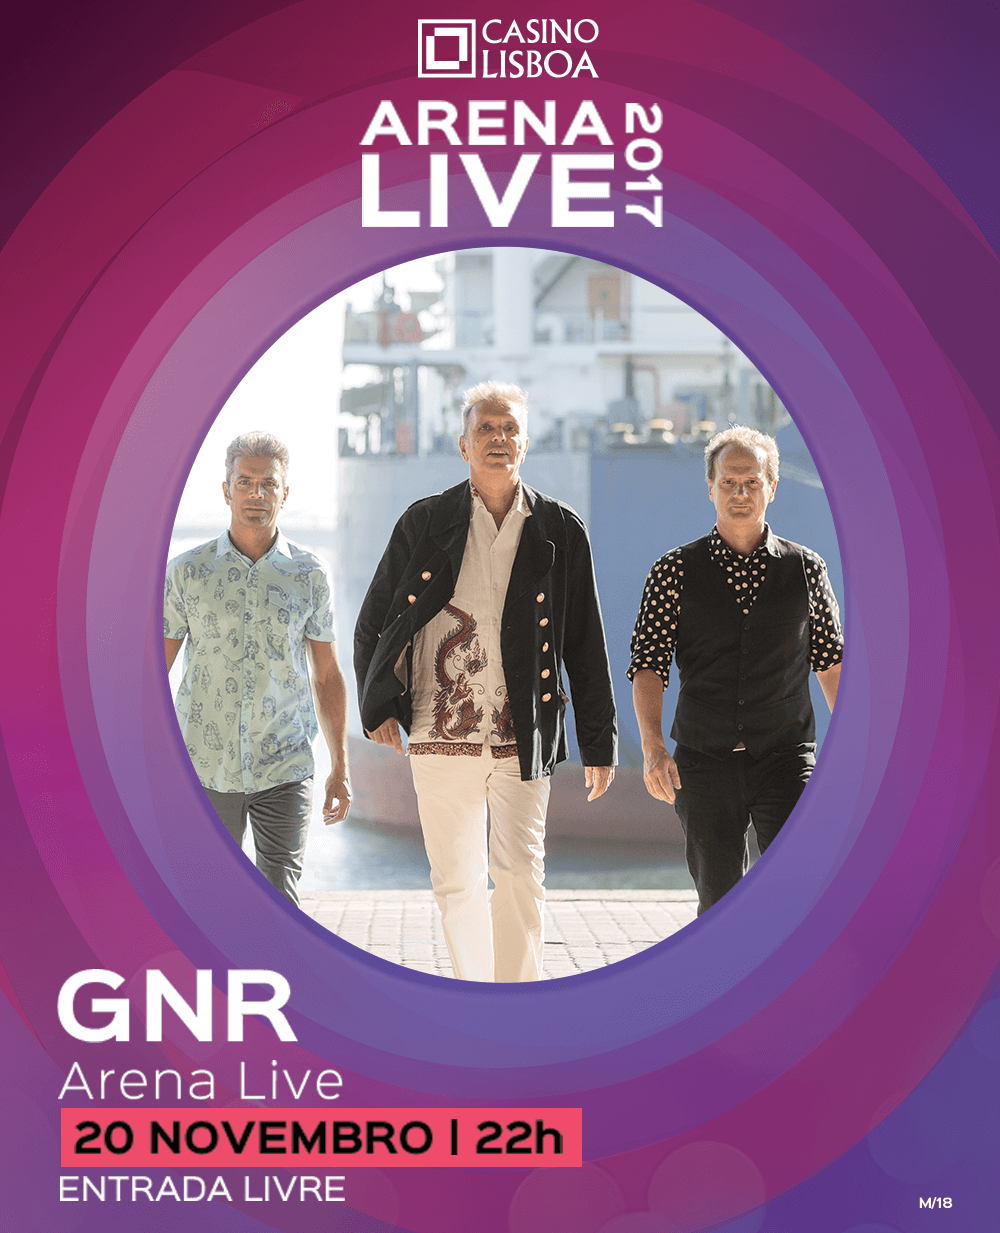 ARENA LIVE 2017 | GNR | CASINO LISBOA